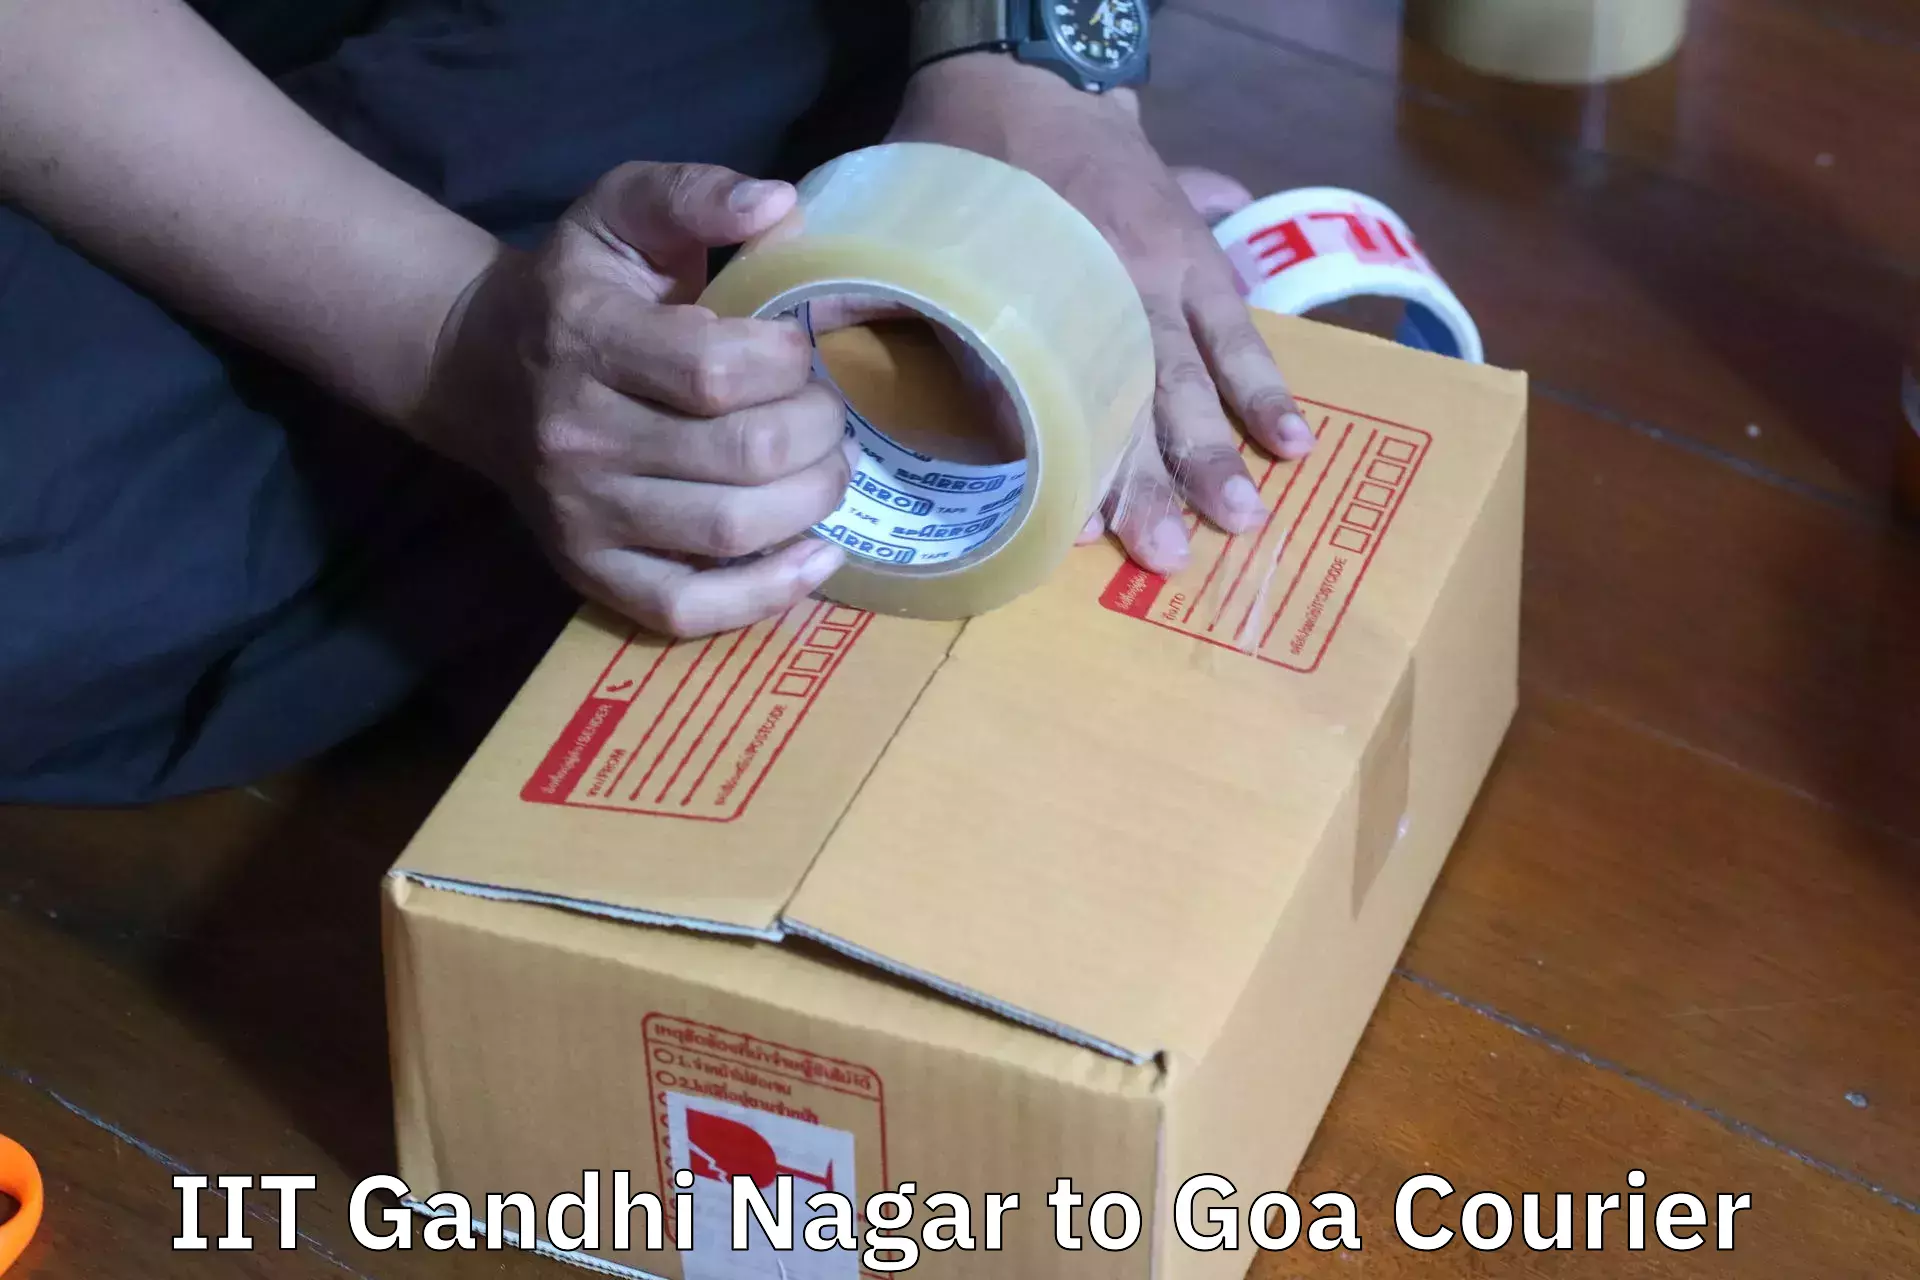 Furniture moving experts in IIT Gandhi Nagar to Goa